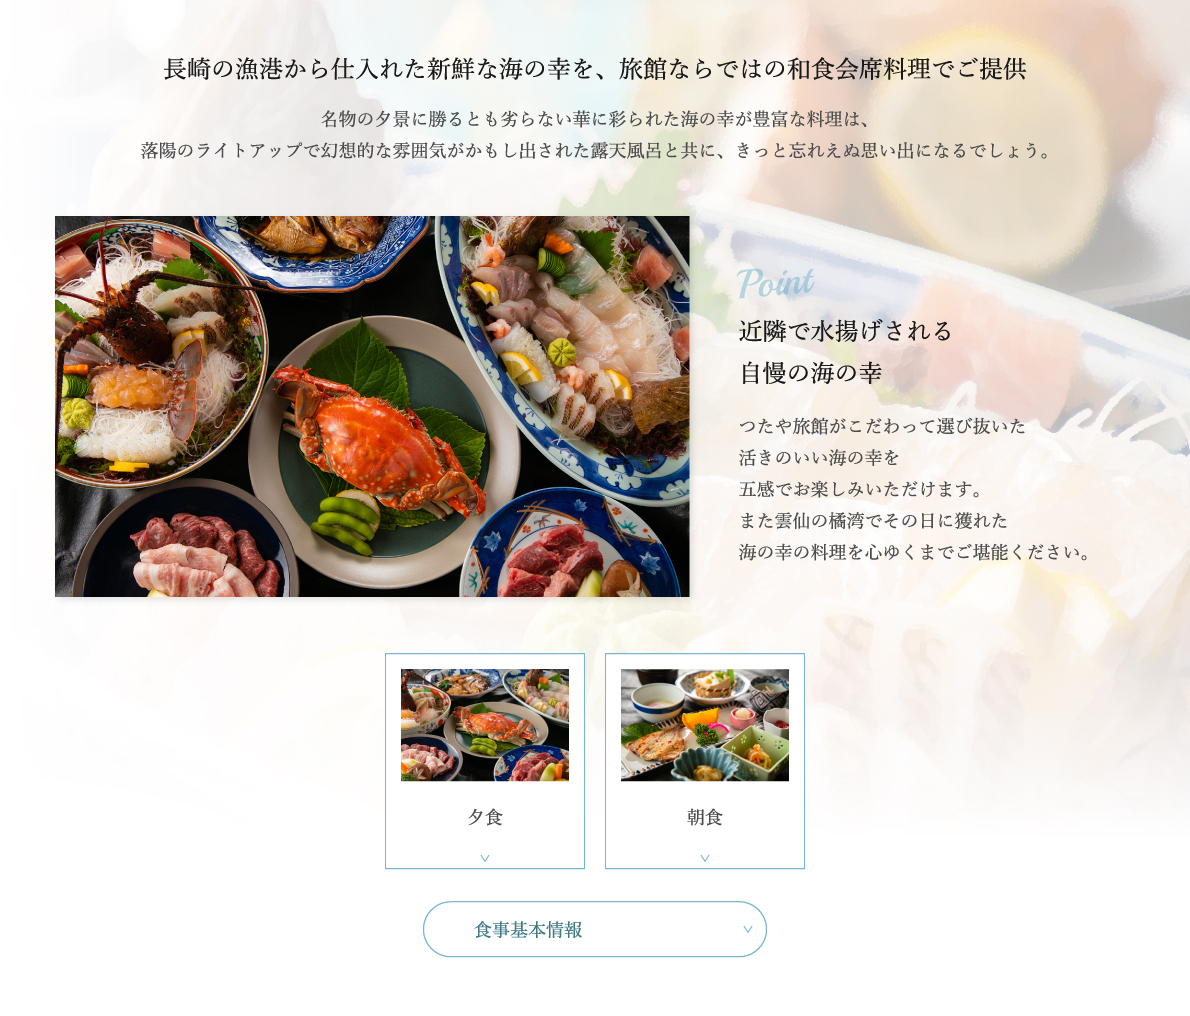 長崎のからから仕入れた新鮮な海の幸を、旅館ならではの和食会席料理でご提供